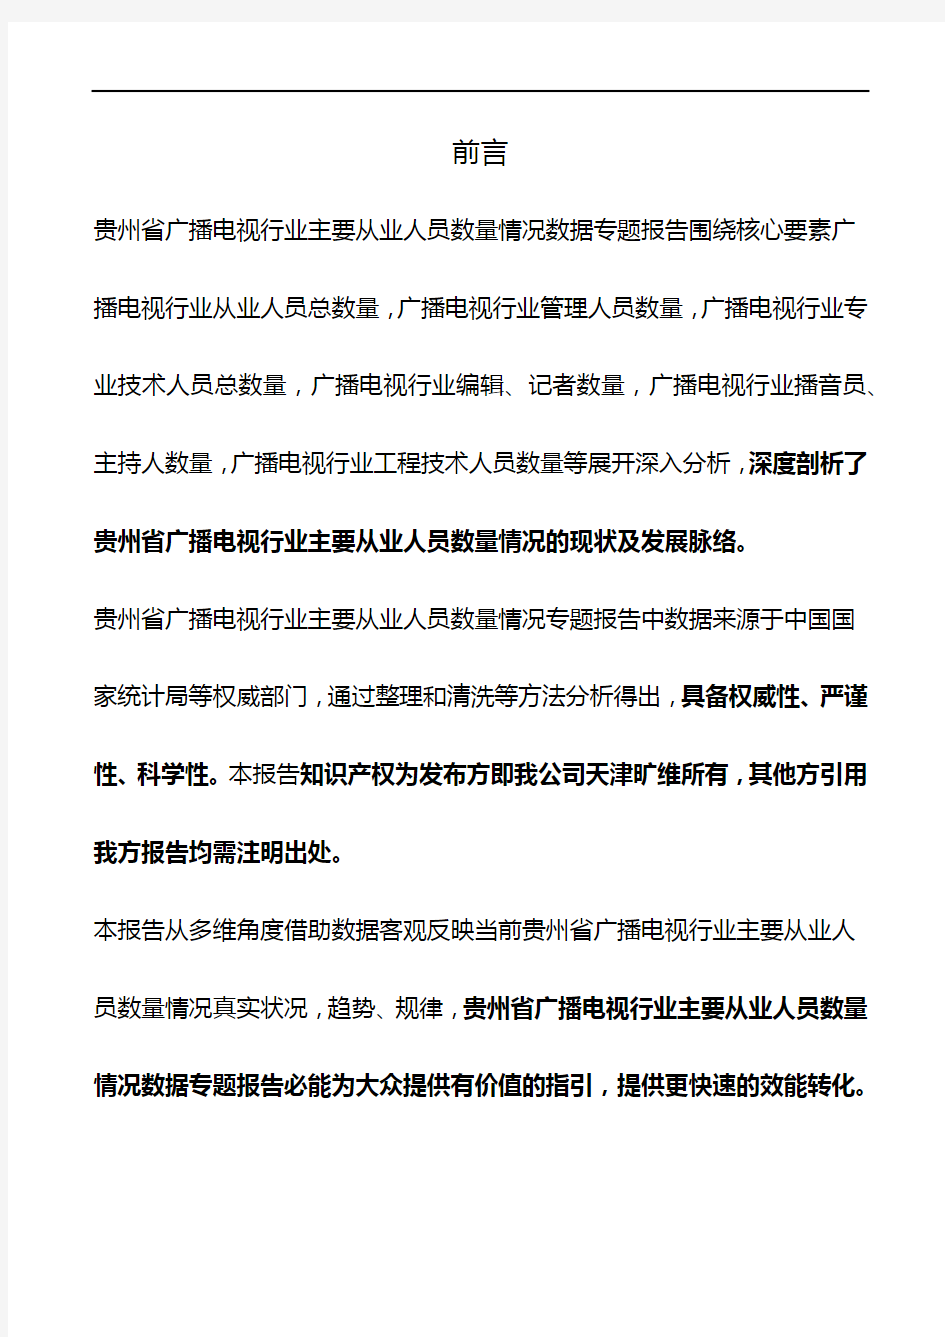 贵州省广播电视行业主要从业人员数量情况3年数据专题报告2019版